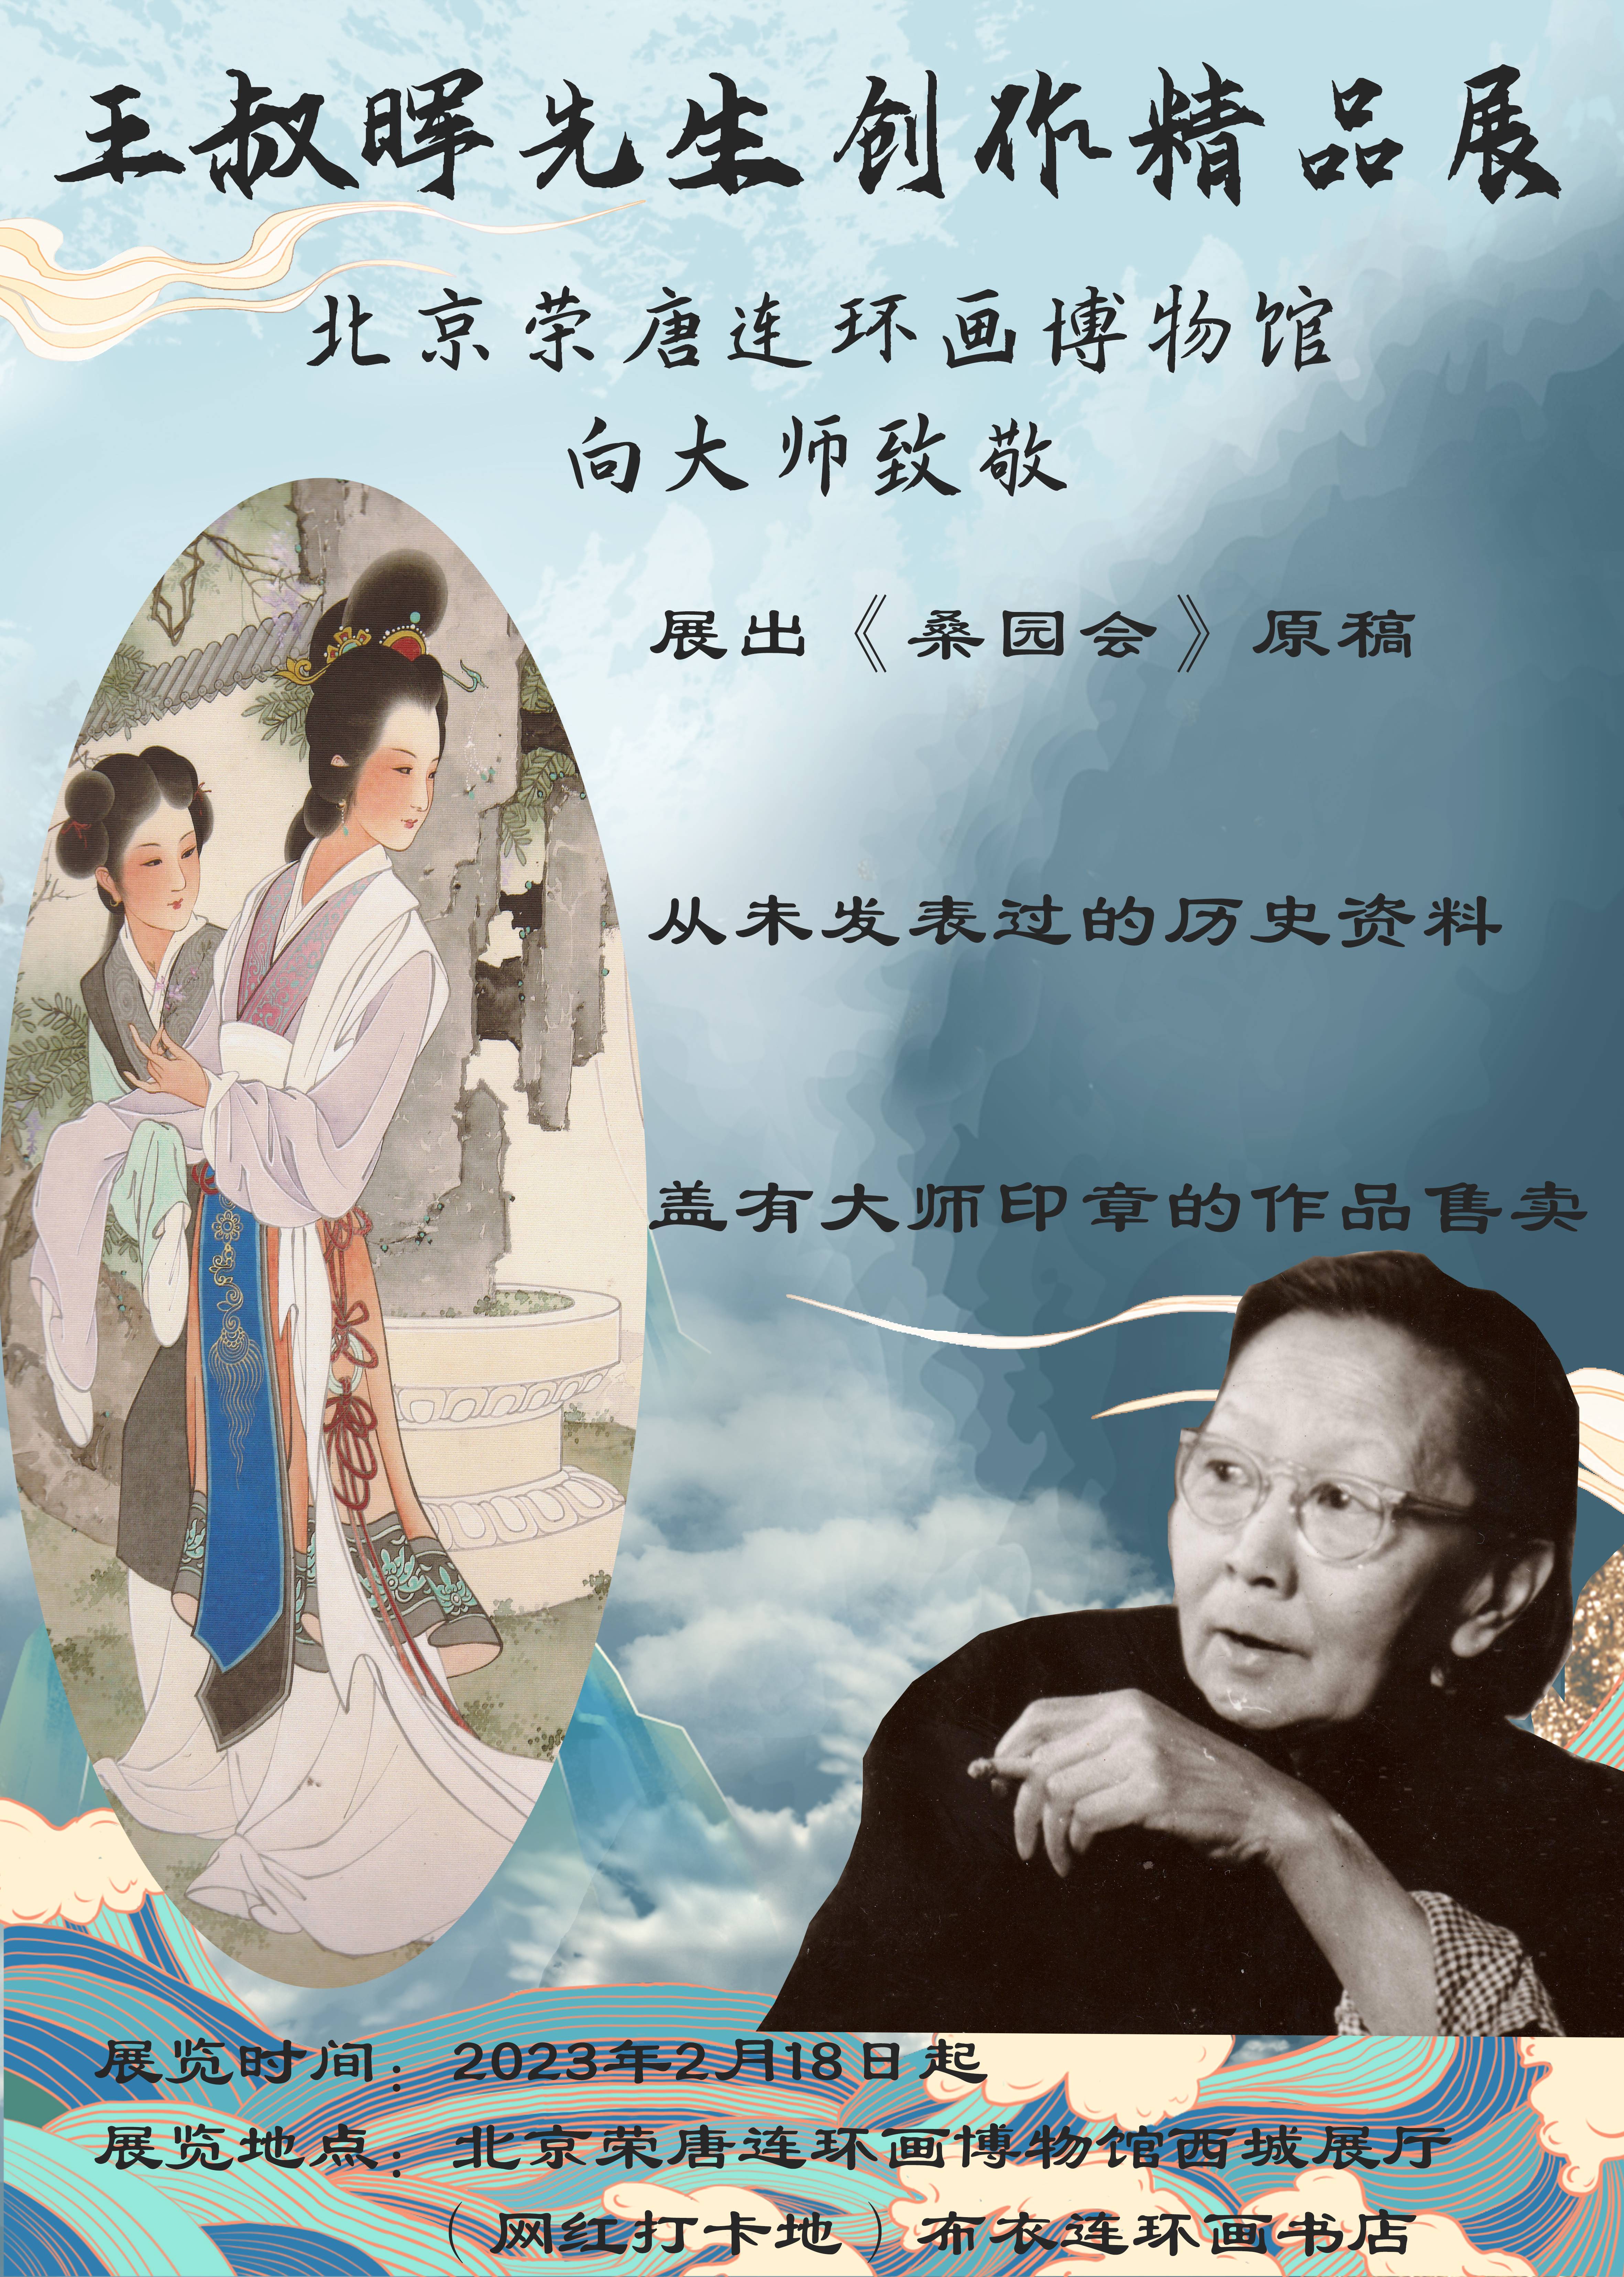 致敬王叔晖先生精品展将于北京荣唐连环画博物馆西四分馆展出